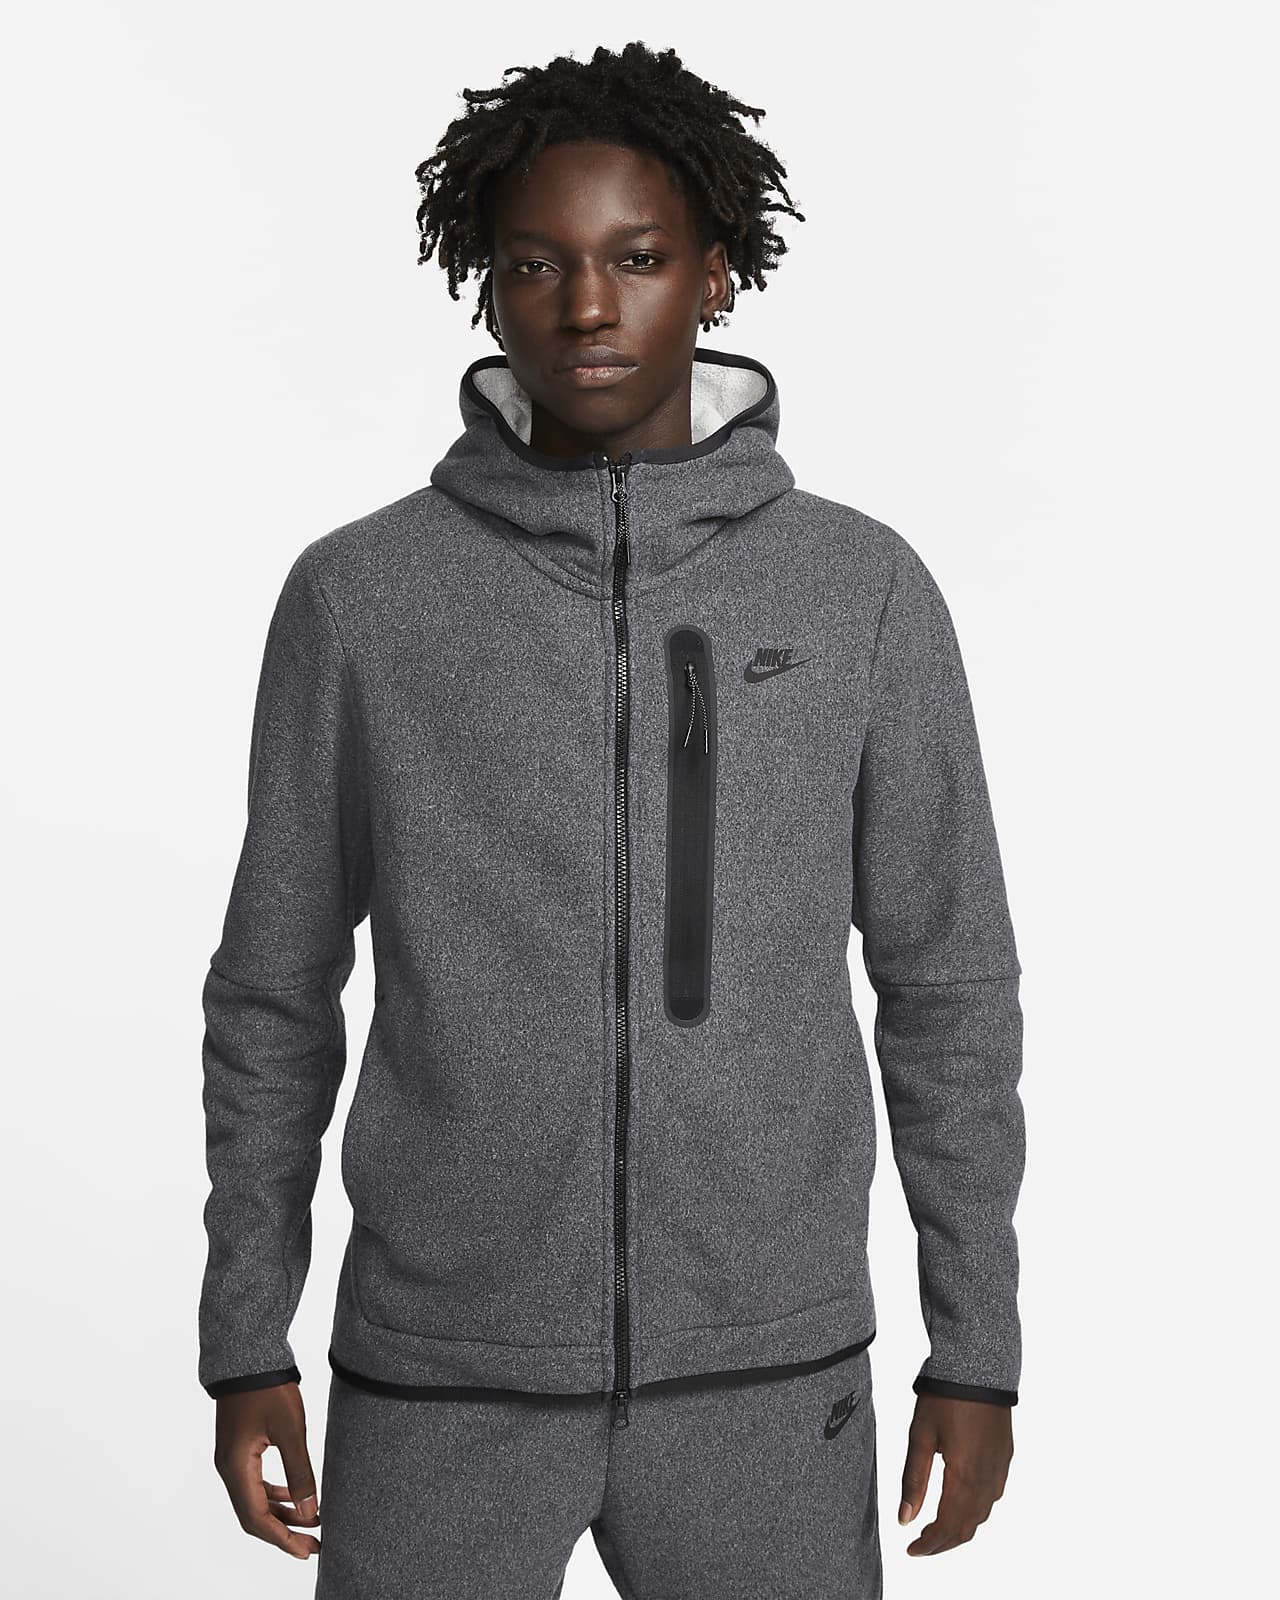 Identiteit Verzoekschrift engineering Nike Sportswear Tech Fleece Men's Full-zip Winterized Hoodie. Nike BE